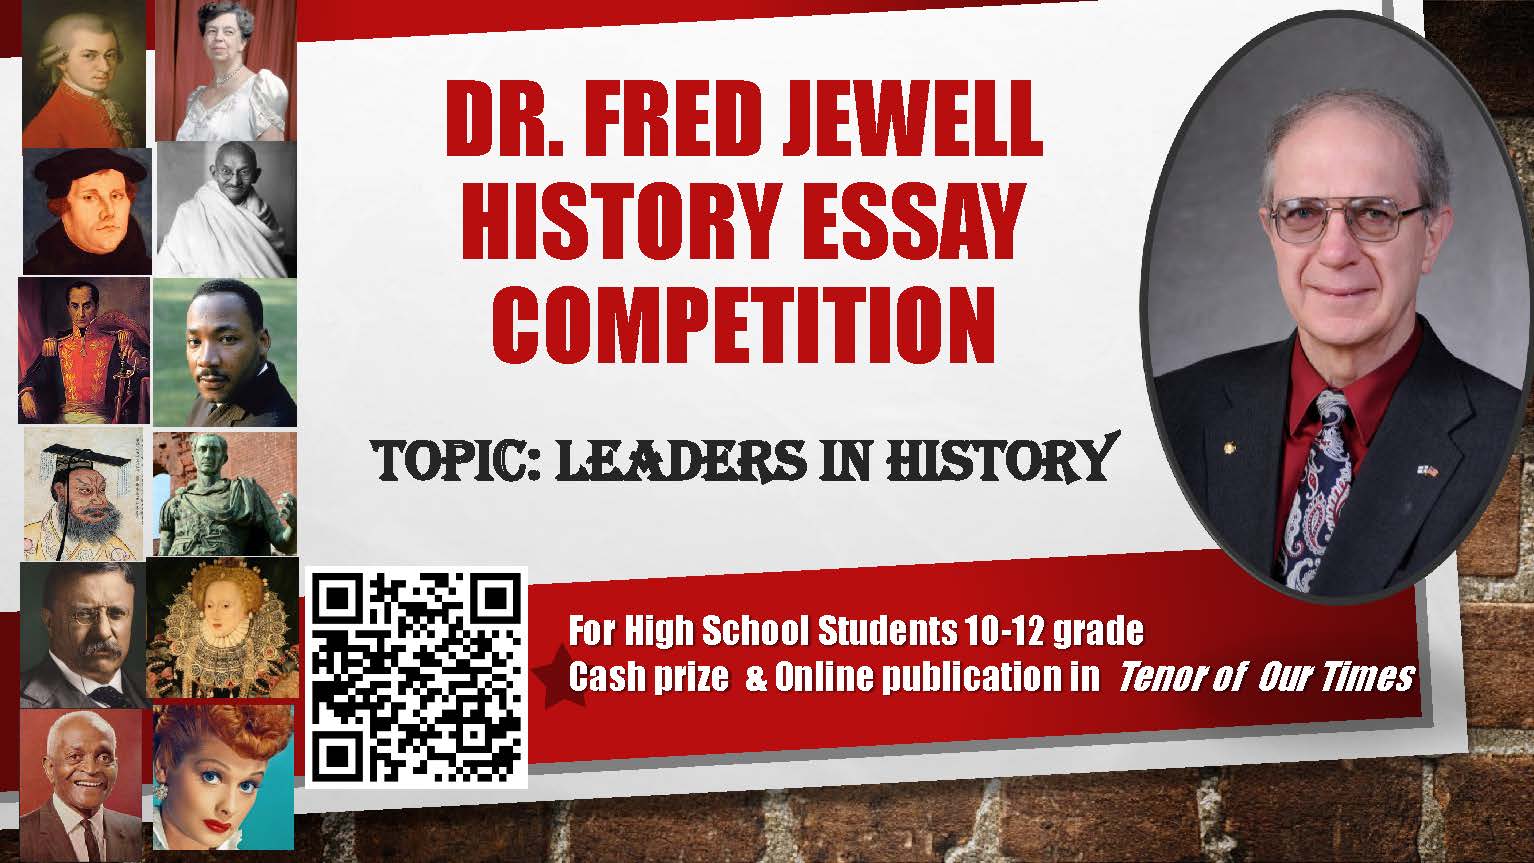 jewell-essay-contest-slide-advert.jpg.jpeg